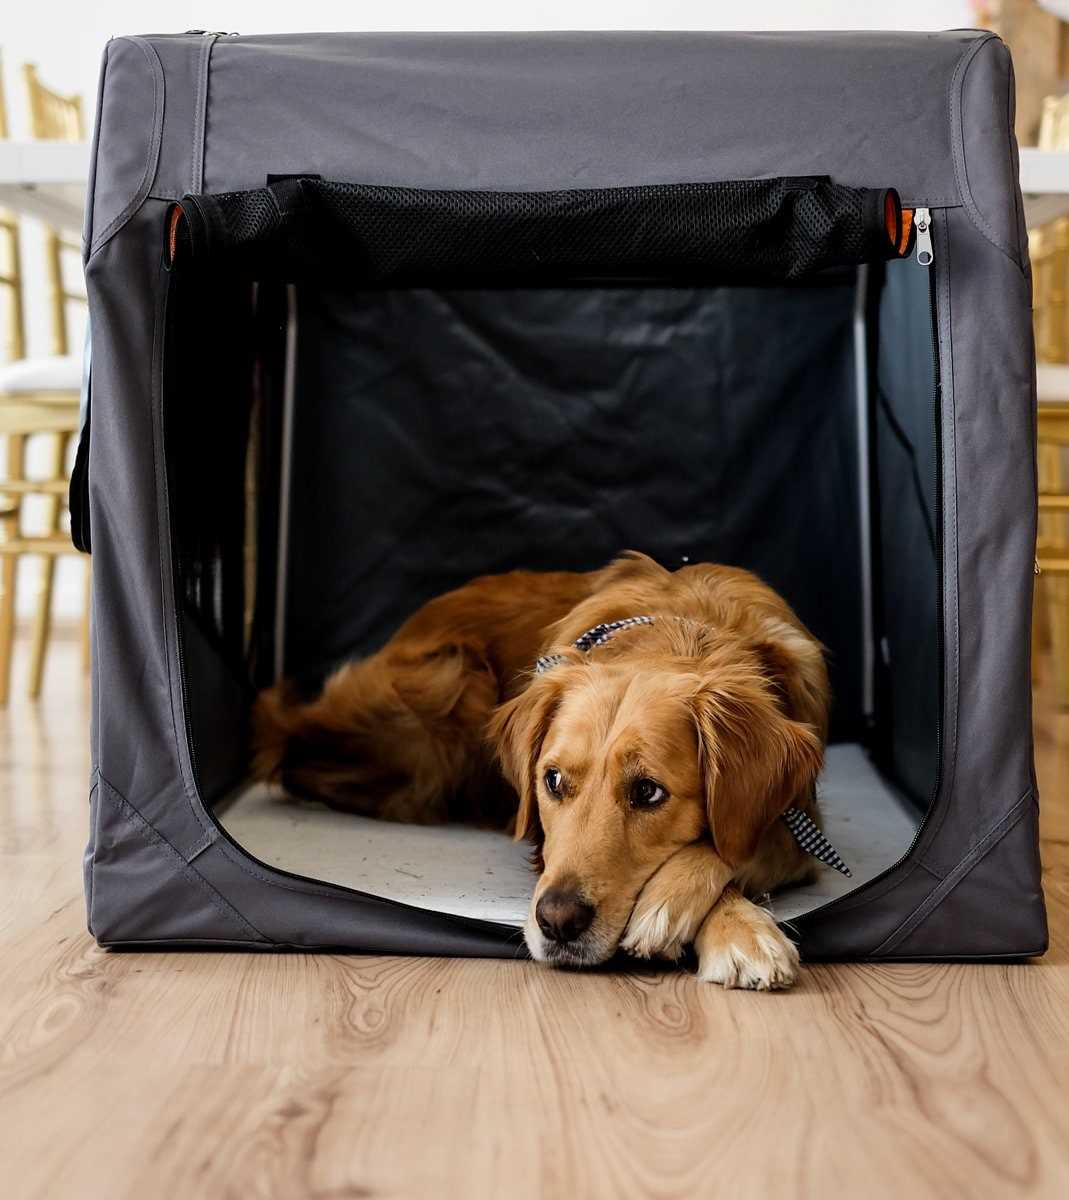 Alternativen zum Alleinlassen des Hundes in einer Box